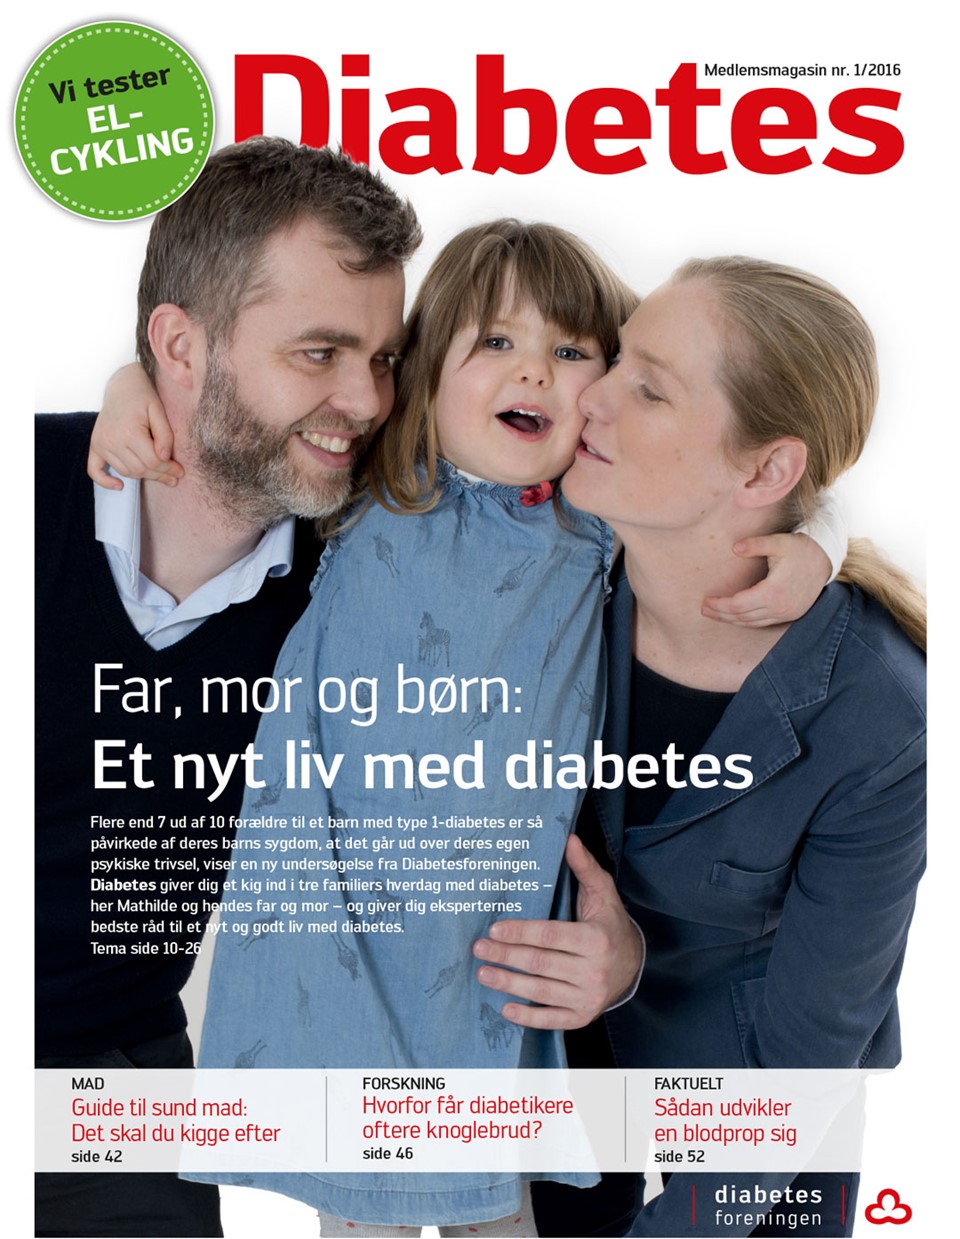  Forside af magasinet Diabetes februar 2016